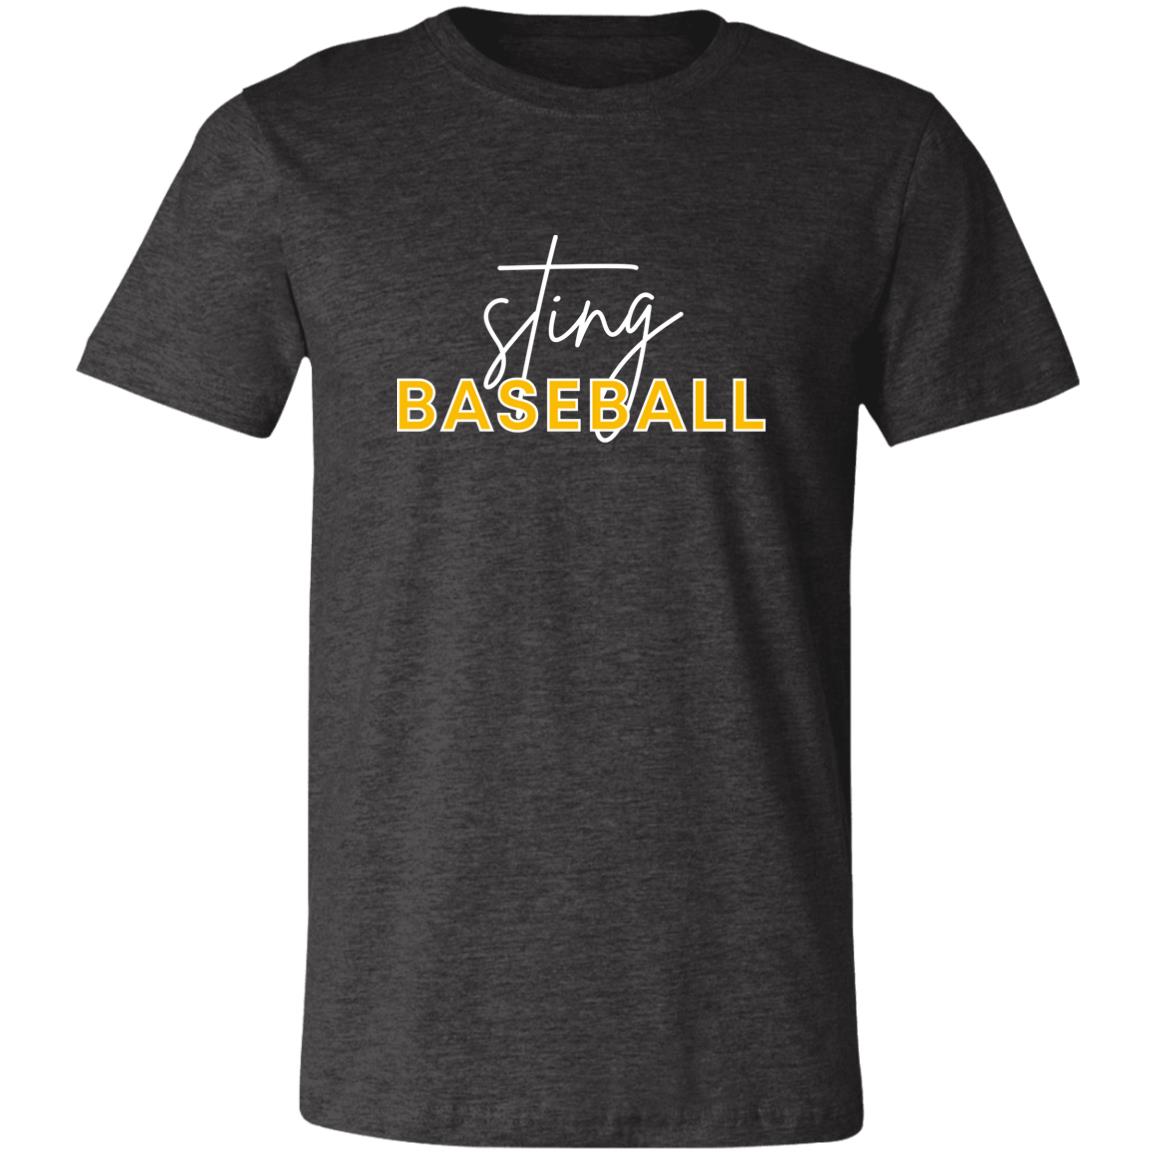 Sting Baseball- Adult Comfy T-Shirt